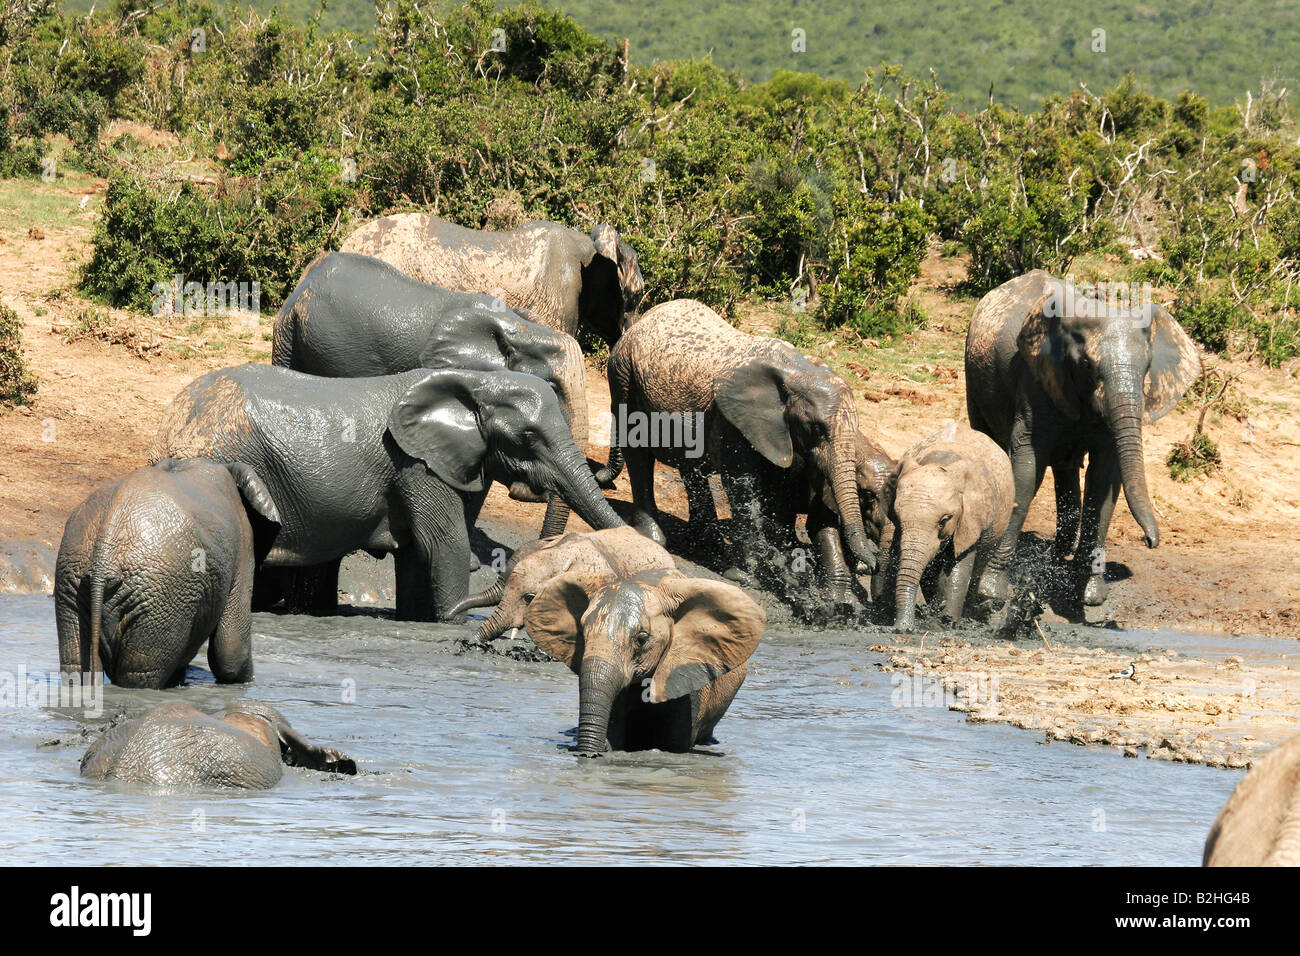 addo elephant national park south africa suedafrika Afrikanischer Elefant african elephant Stock Photo